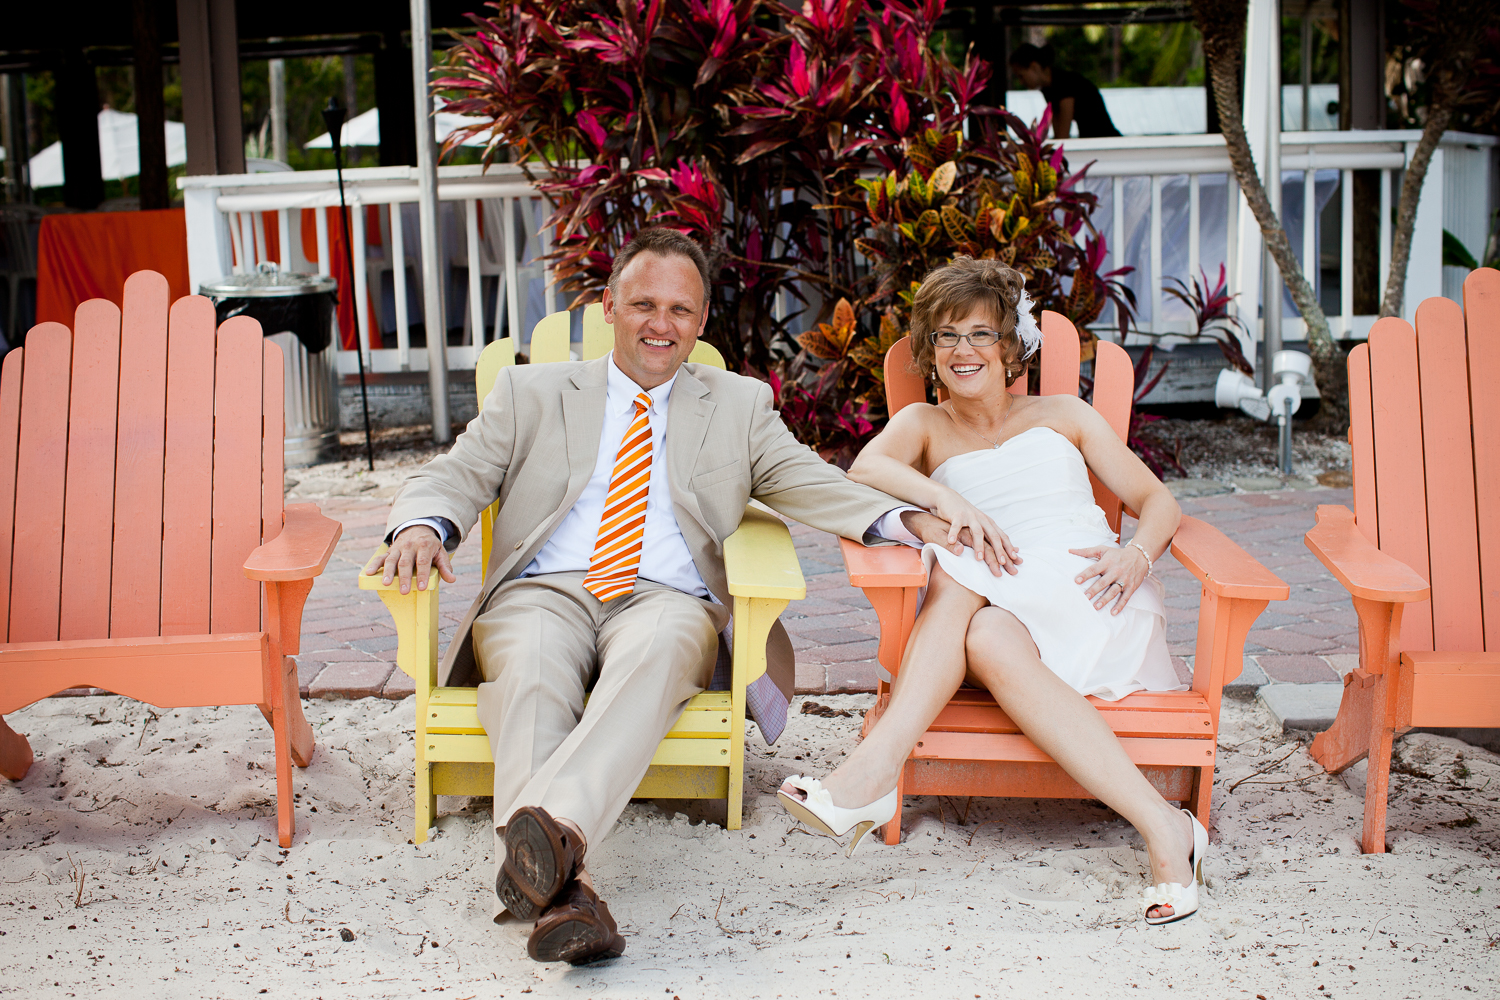  Florida orange-themed wedding at Paradise Cove, Orlando 